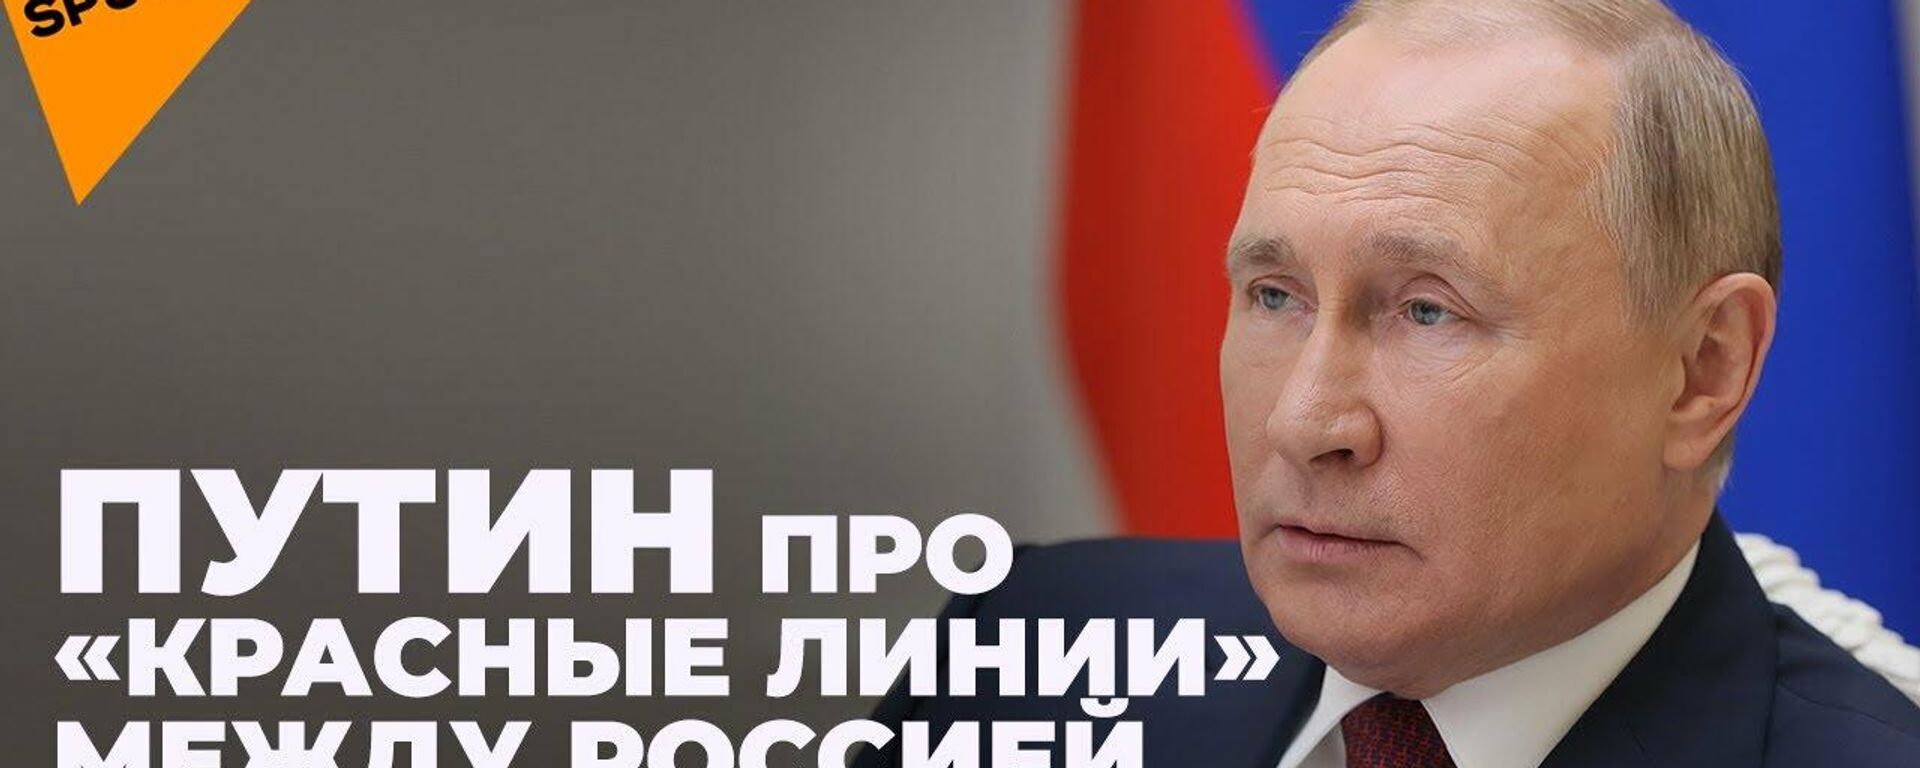 Путин: НАТО вынудила Россию разработать гиперзвуковое оружие - Sputnik Узбекистан, 1920, 01.12.2021